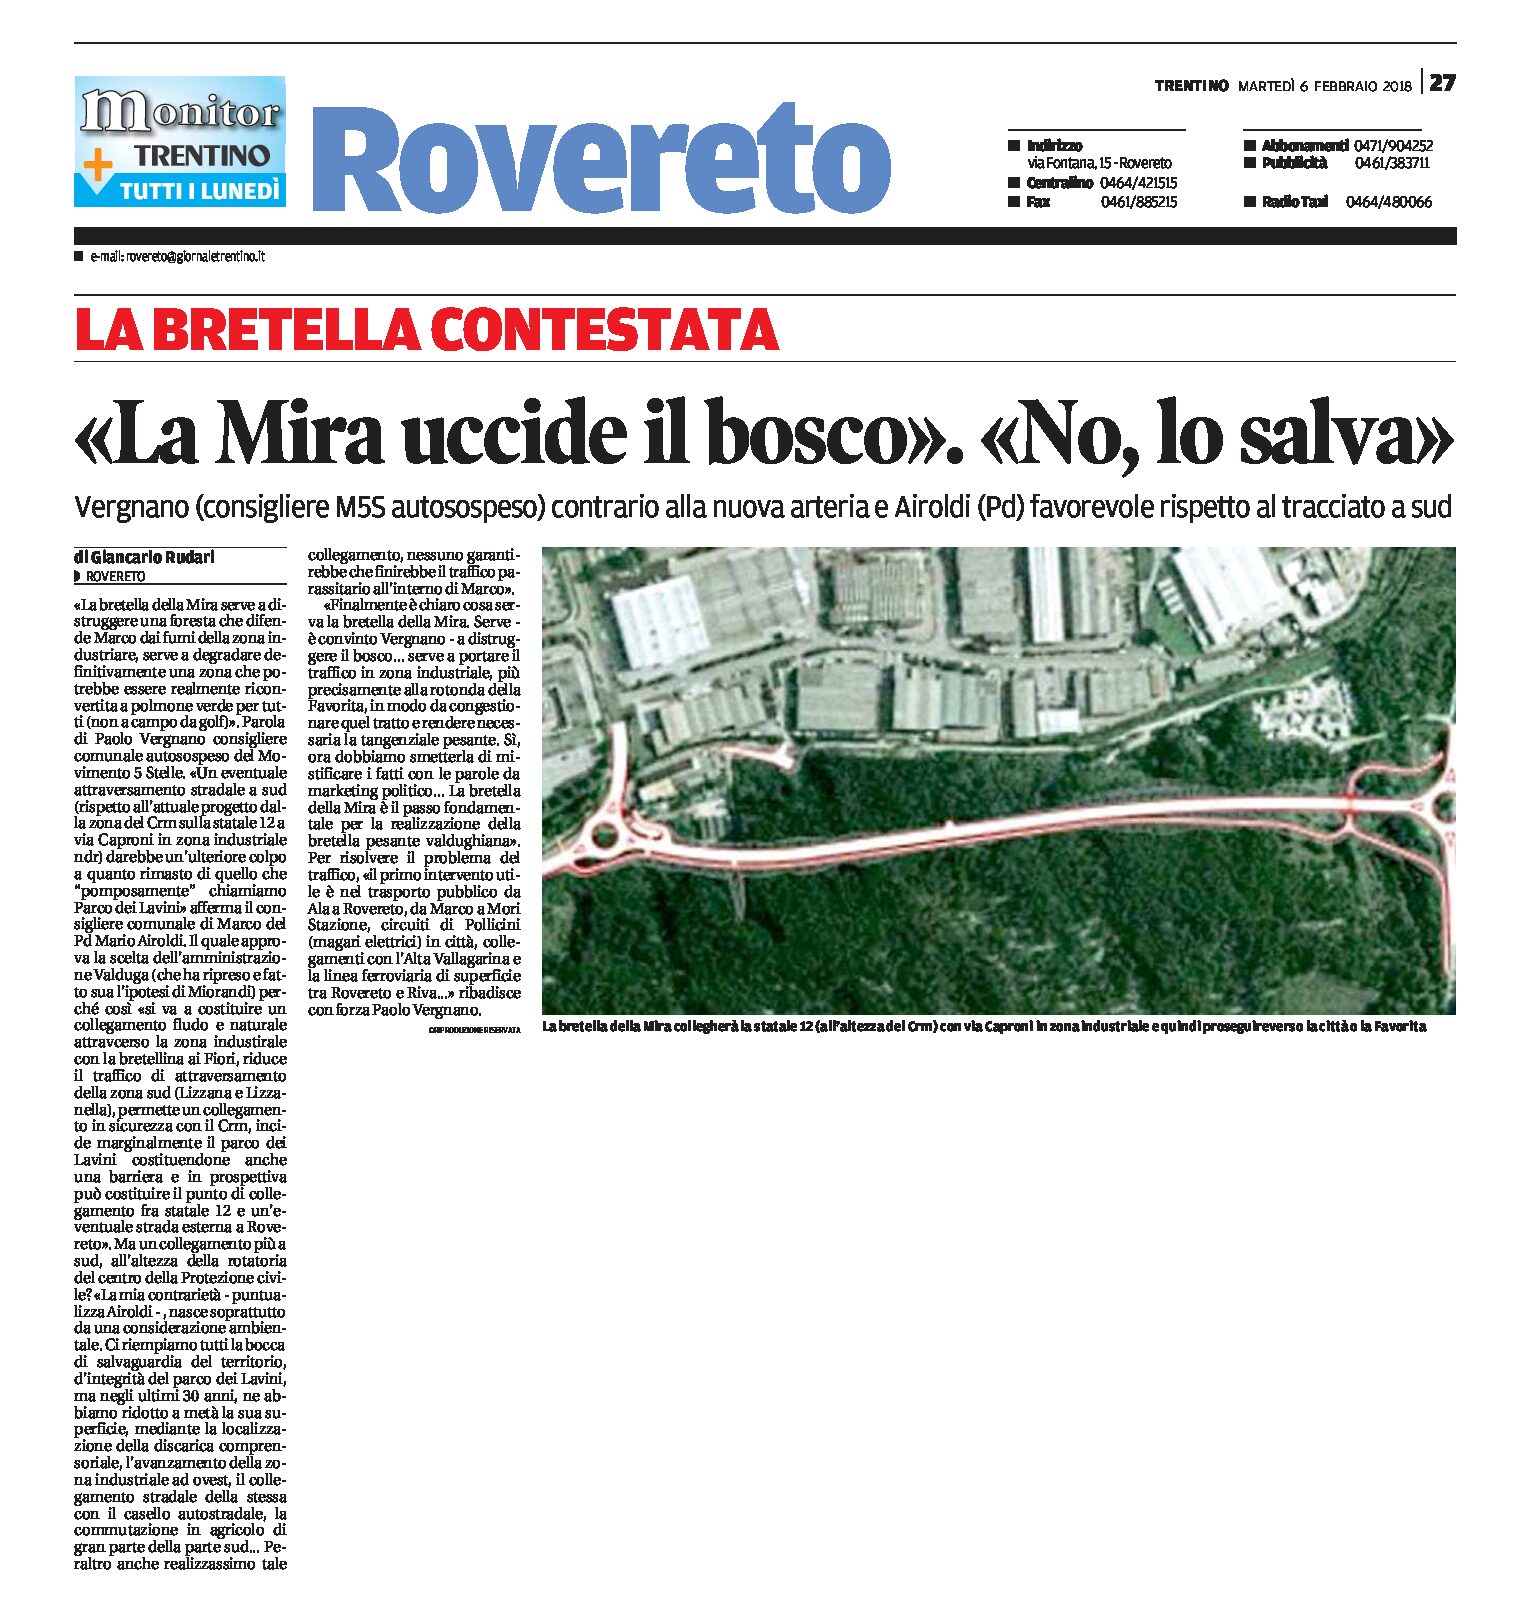 Rovereto: “La Mira uccide il bosco”. “No, lo salva”